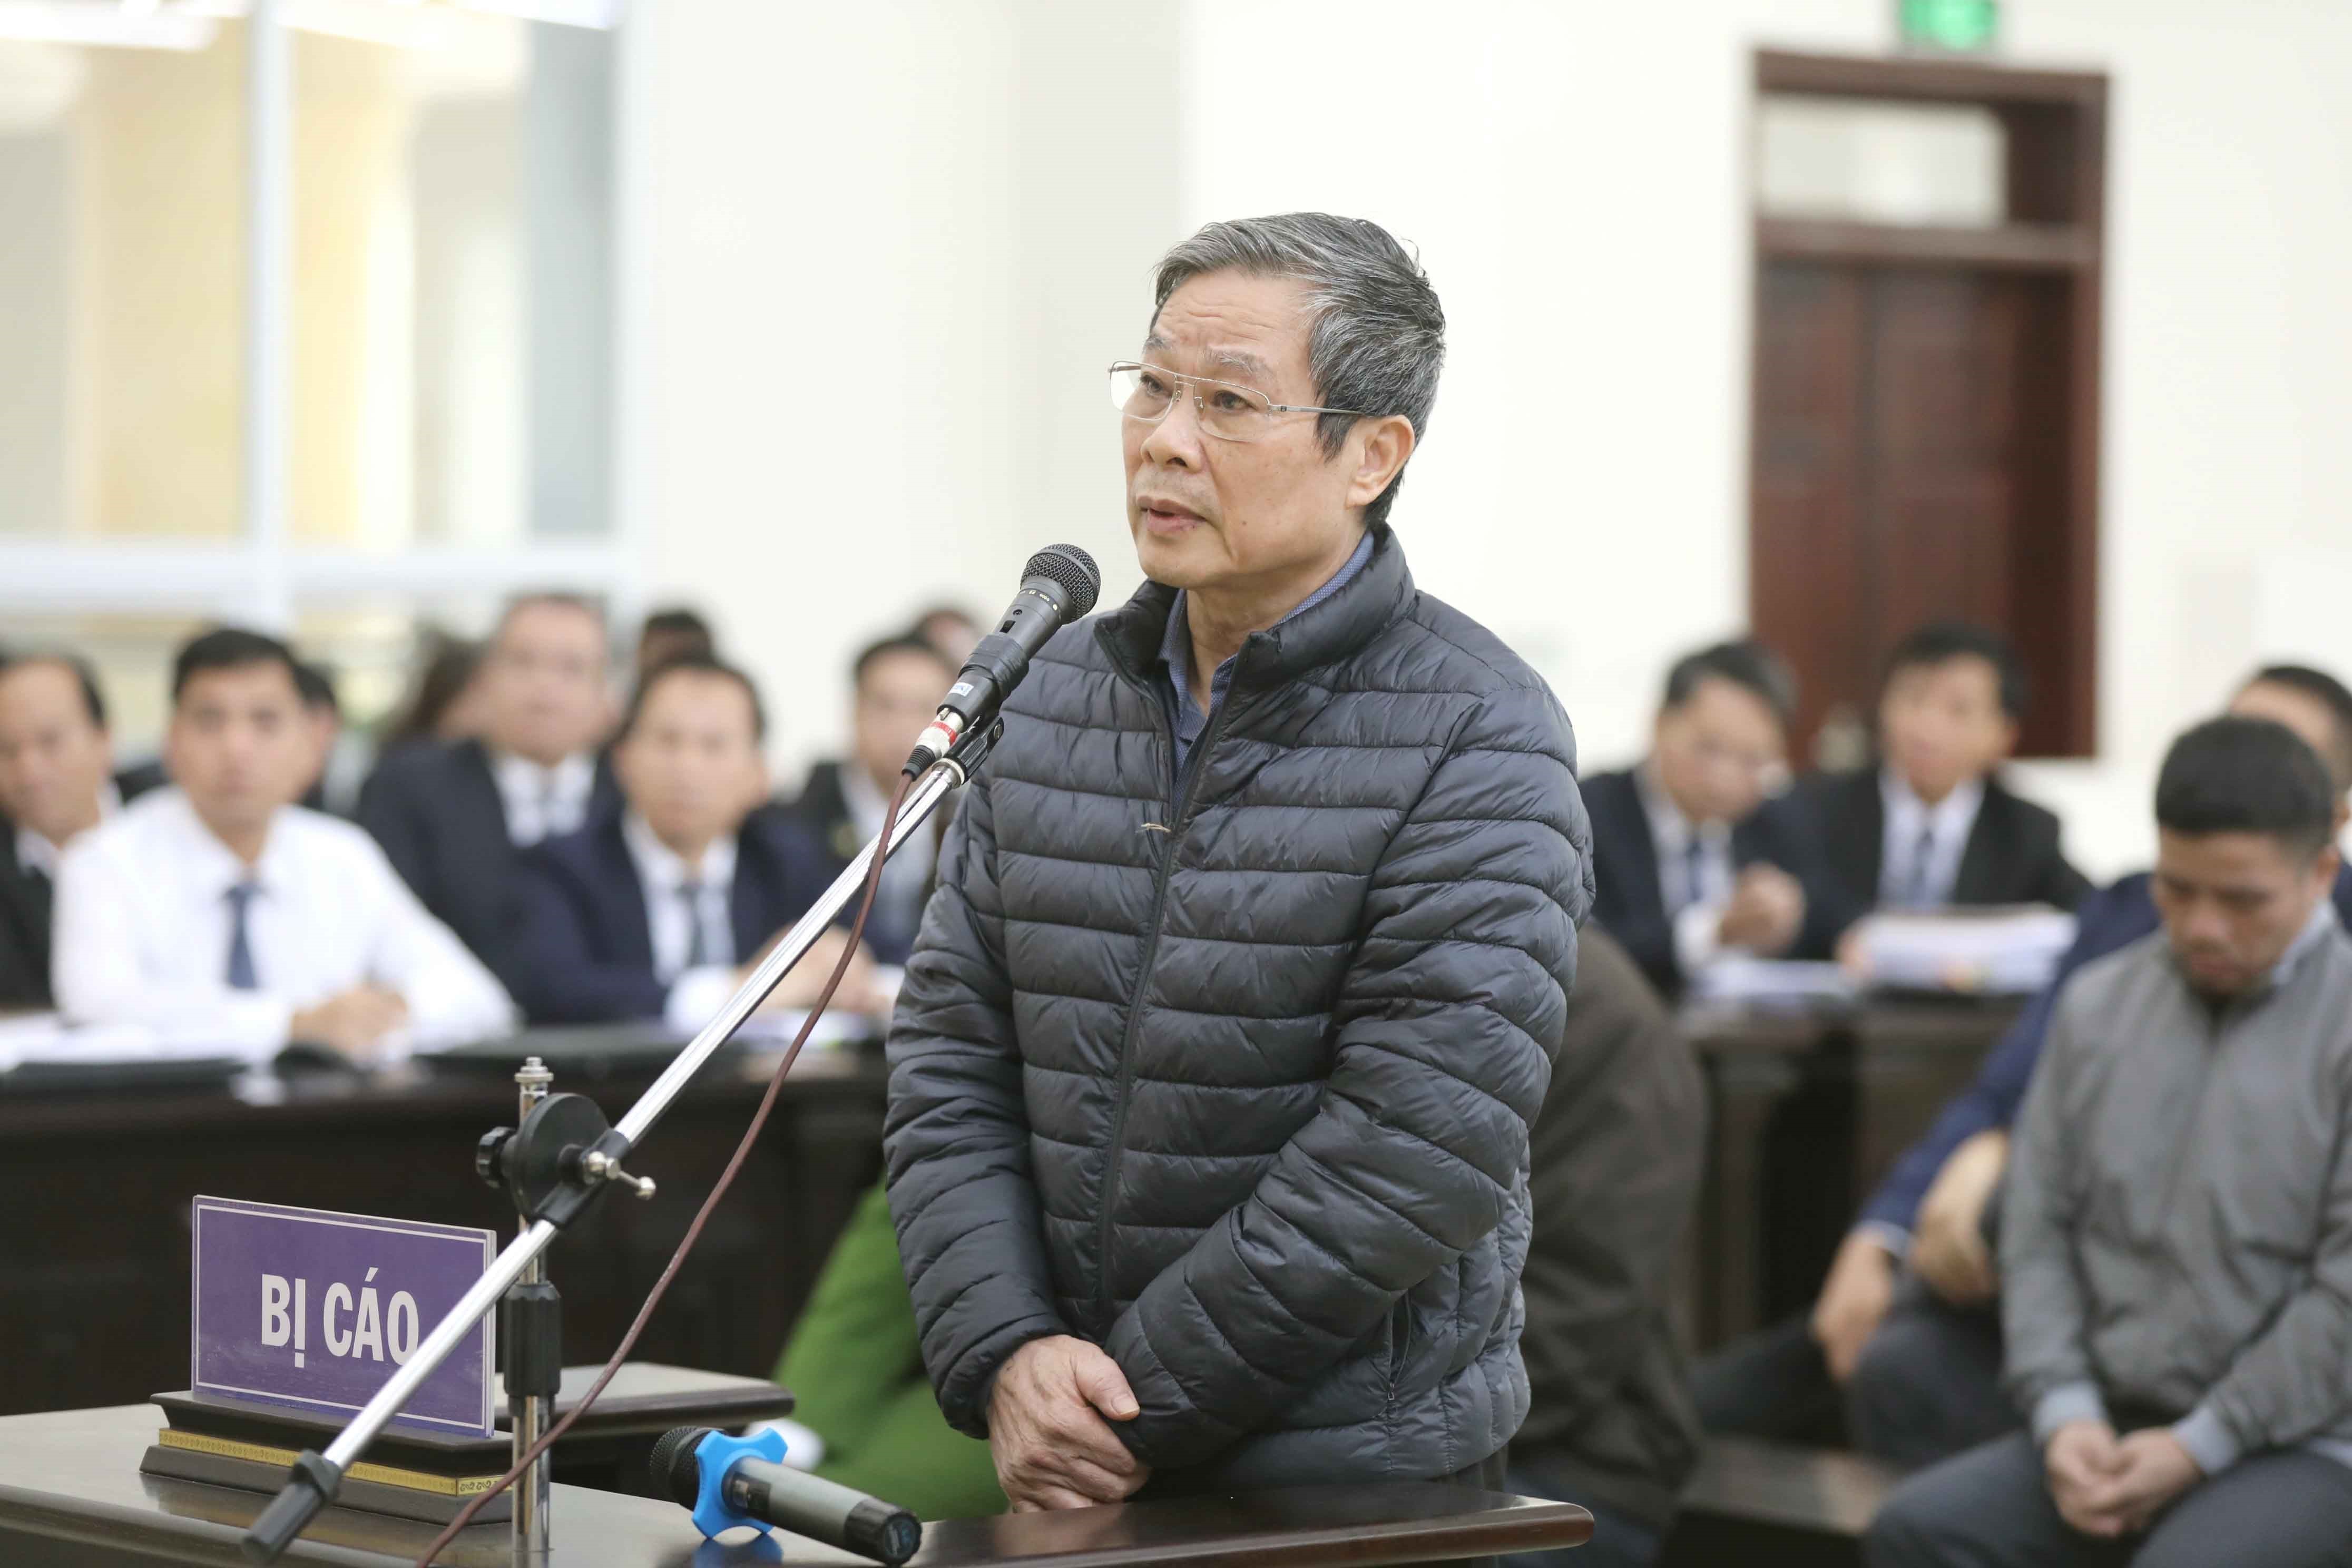 Bị cáo Nguyễn Bắc Son (cựu Bộ trưởng Bộ Thông tin và Truyền thông) trả lời các câu hỏi của Hội đồng xét xử trong vụ án Tổng Công ty Viễn thông MobiFone mua 95% cổ phần của Công ty Cổ phần Nghe nhìn Toàn Cầu (AVG). (Nguồn: TTXVN)